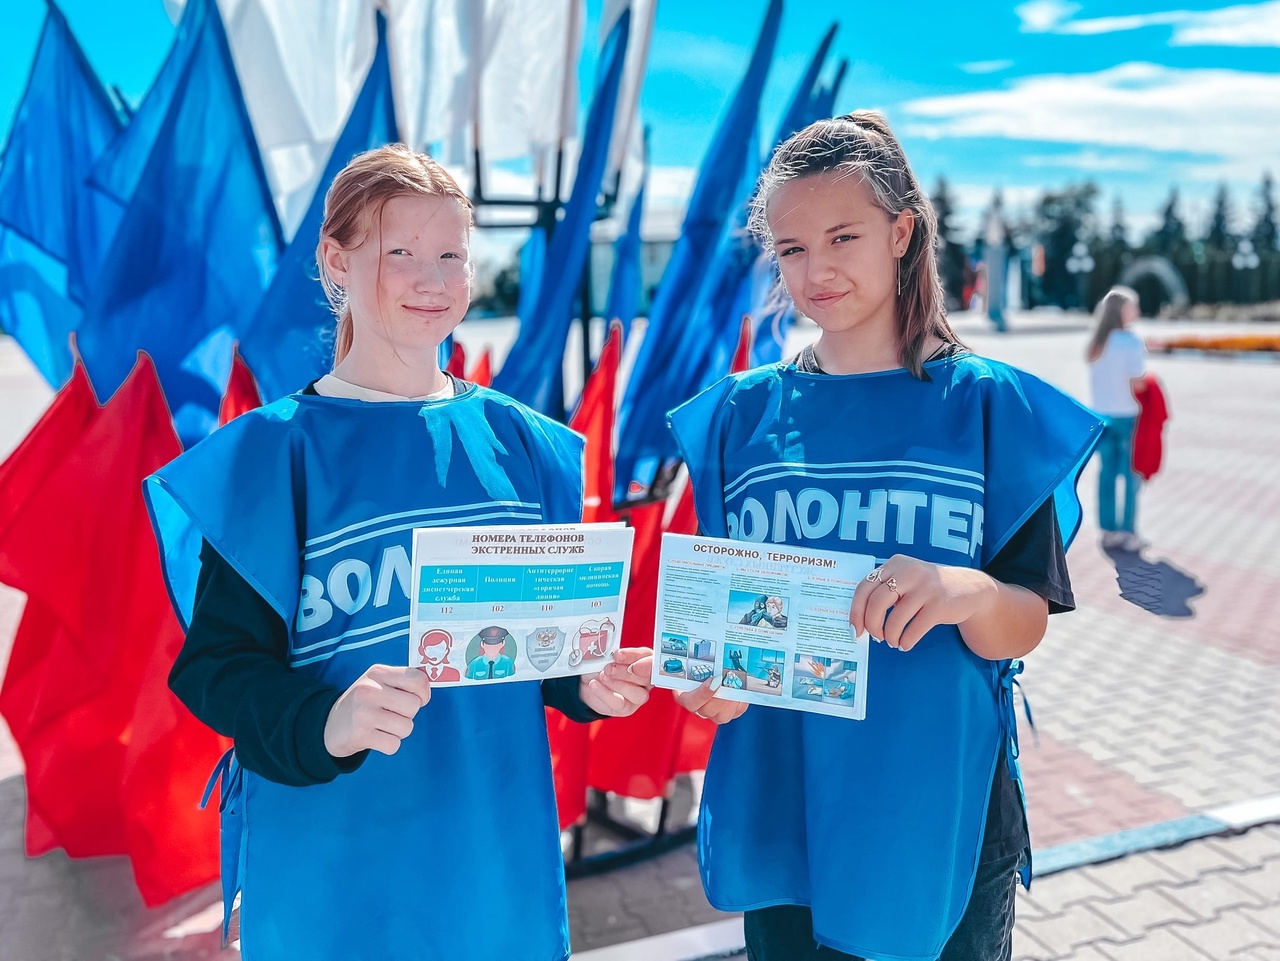 Активисты Чернянского Центра молодежных инициатив организовали и провели акцию “Молодёжь – против террора!”.